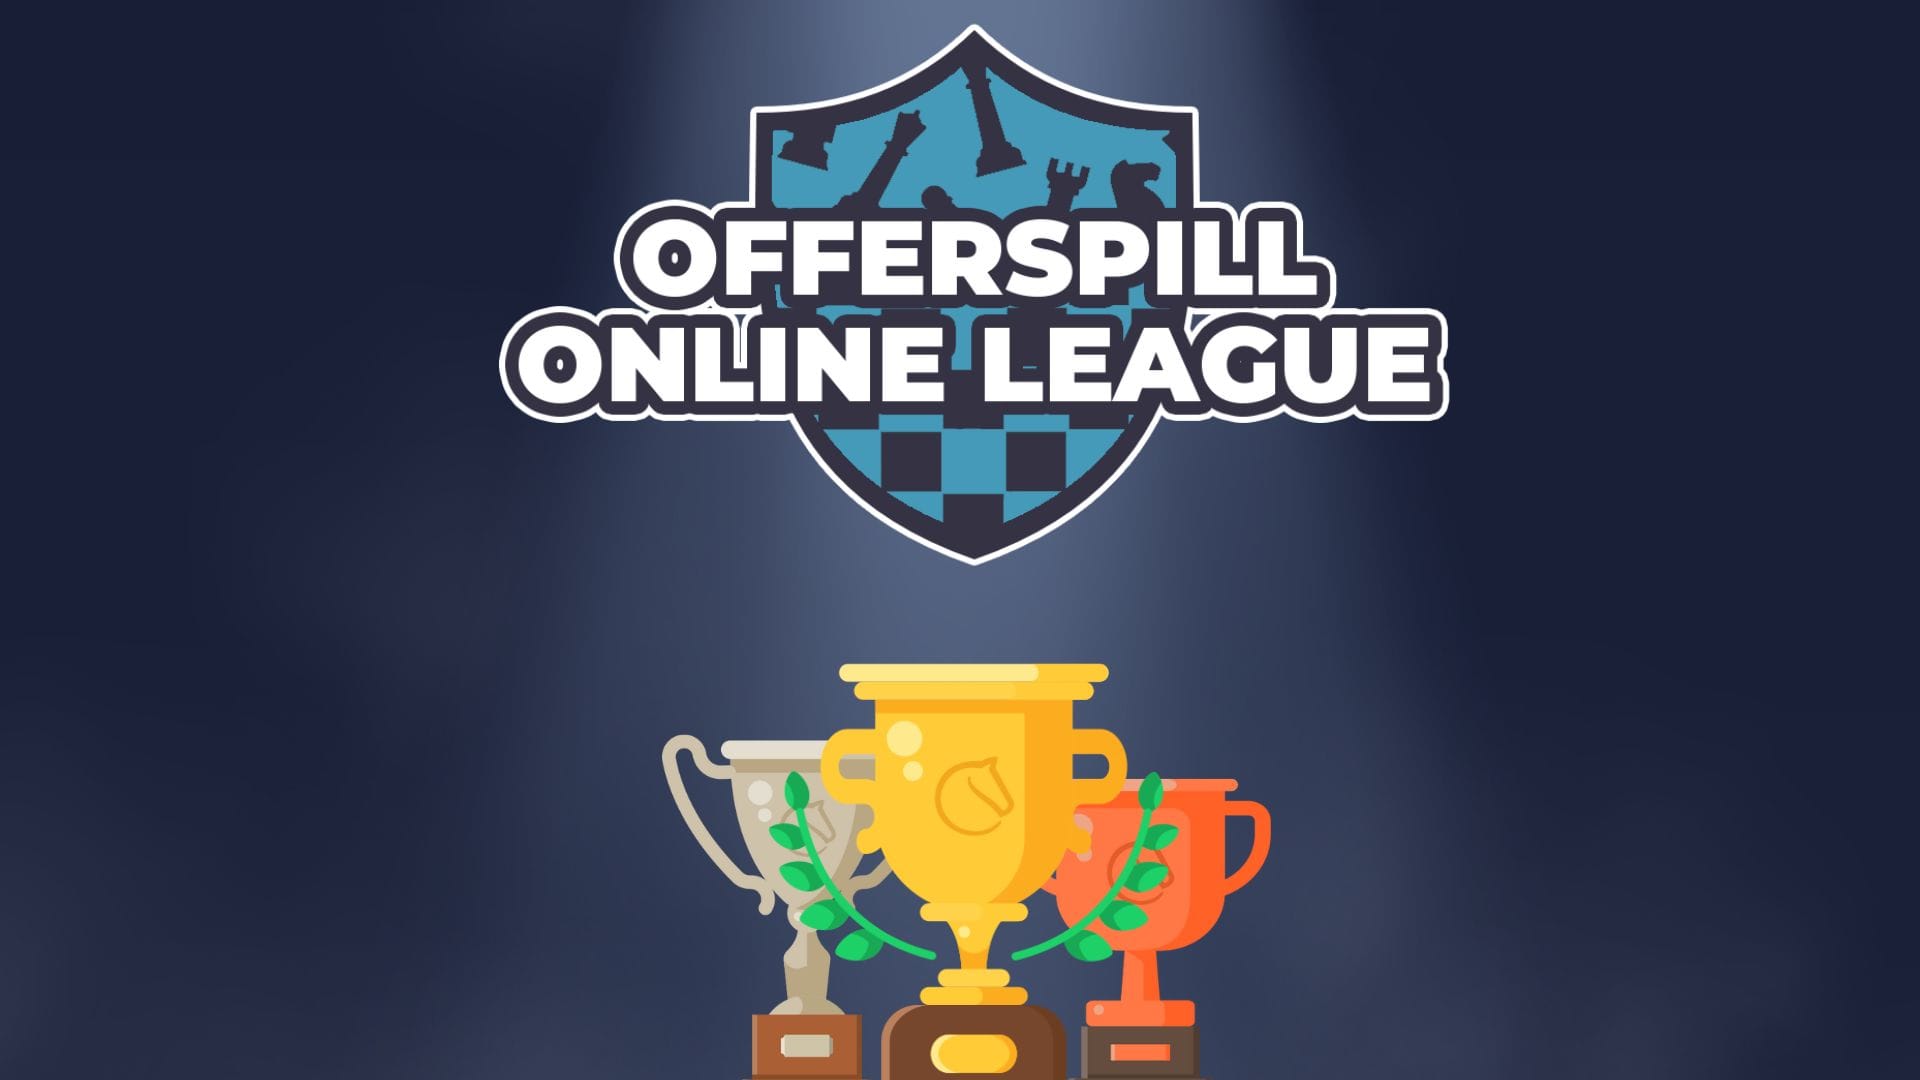 Online League 101: Achievements